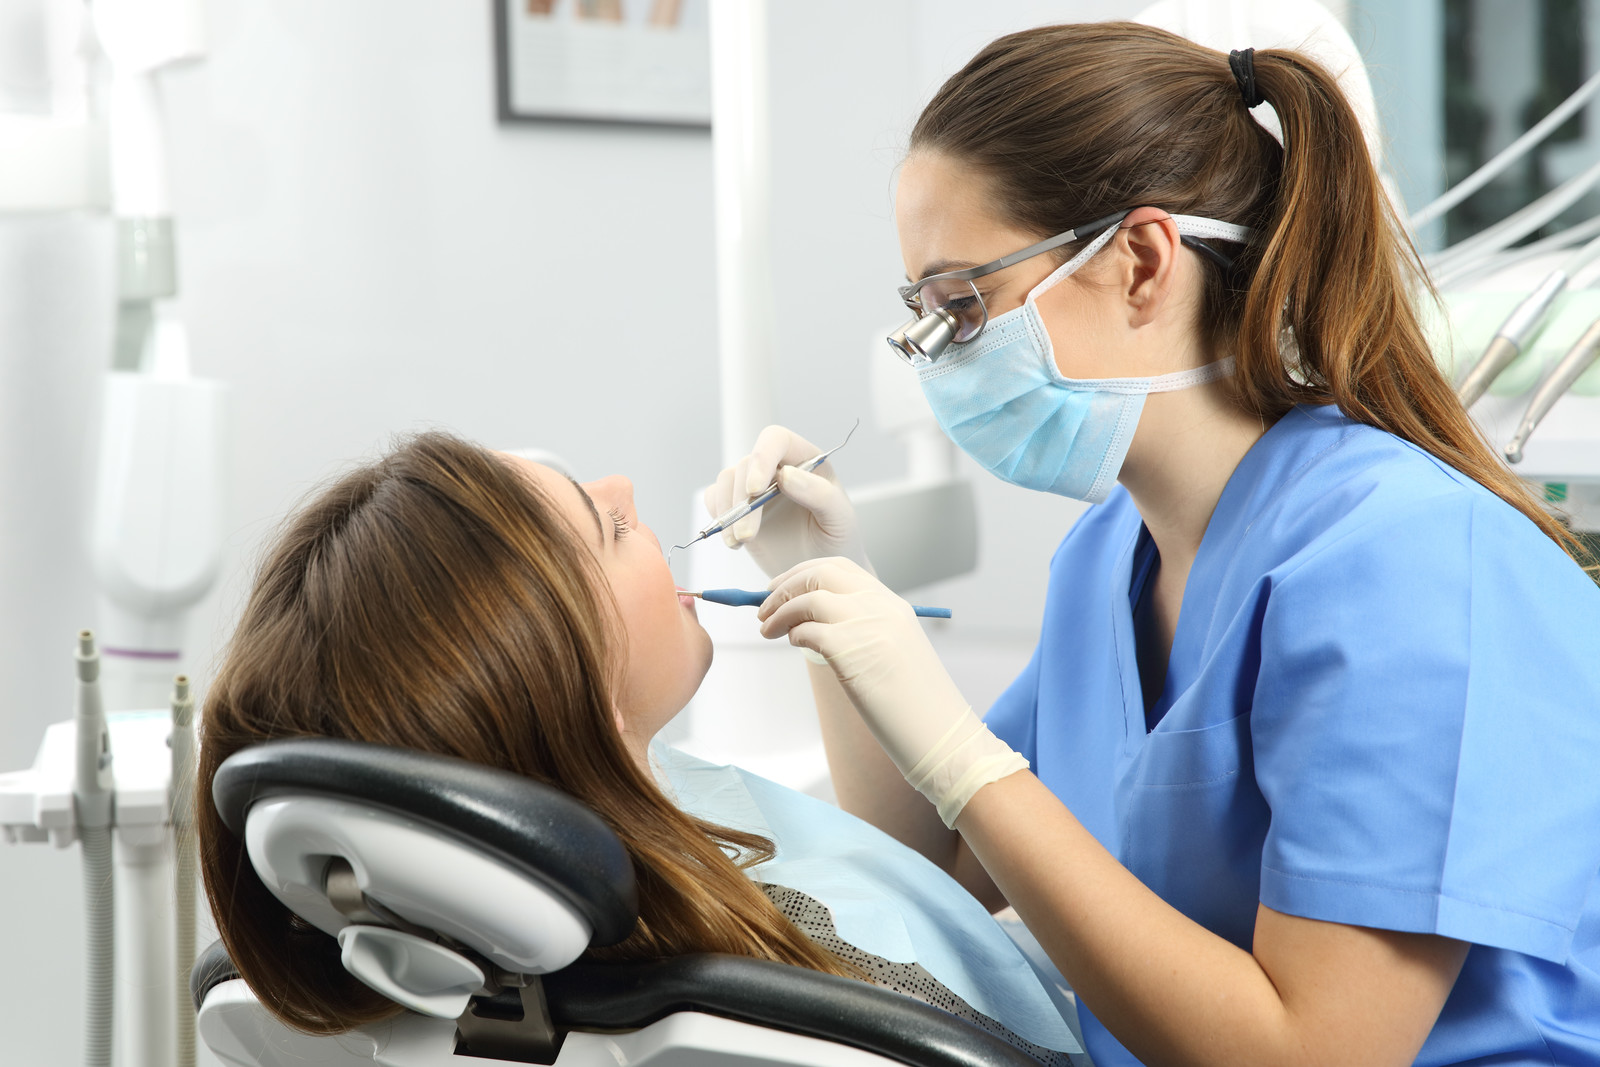 دلیل افزایش قیمت خدمات دندانپزشکی چیست؟